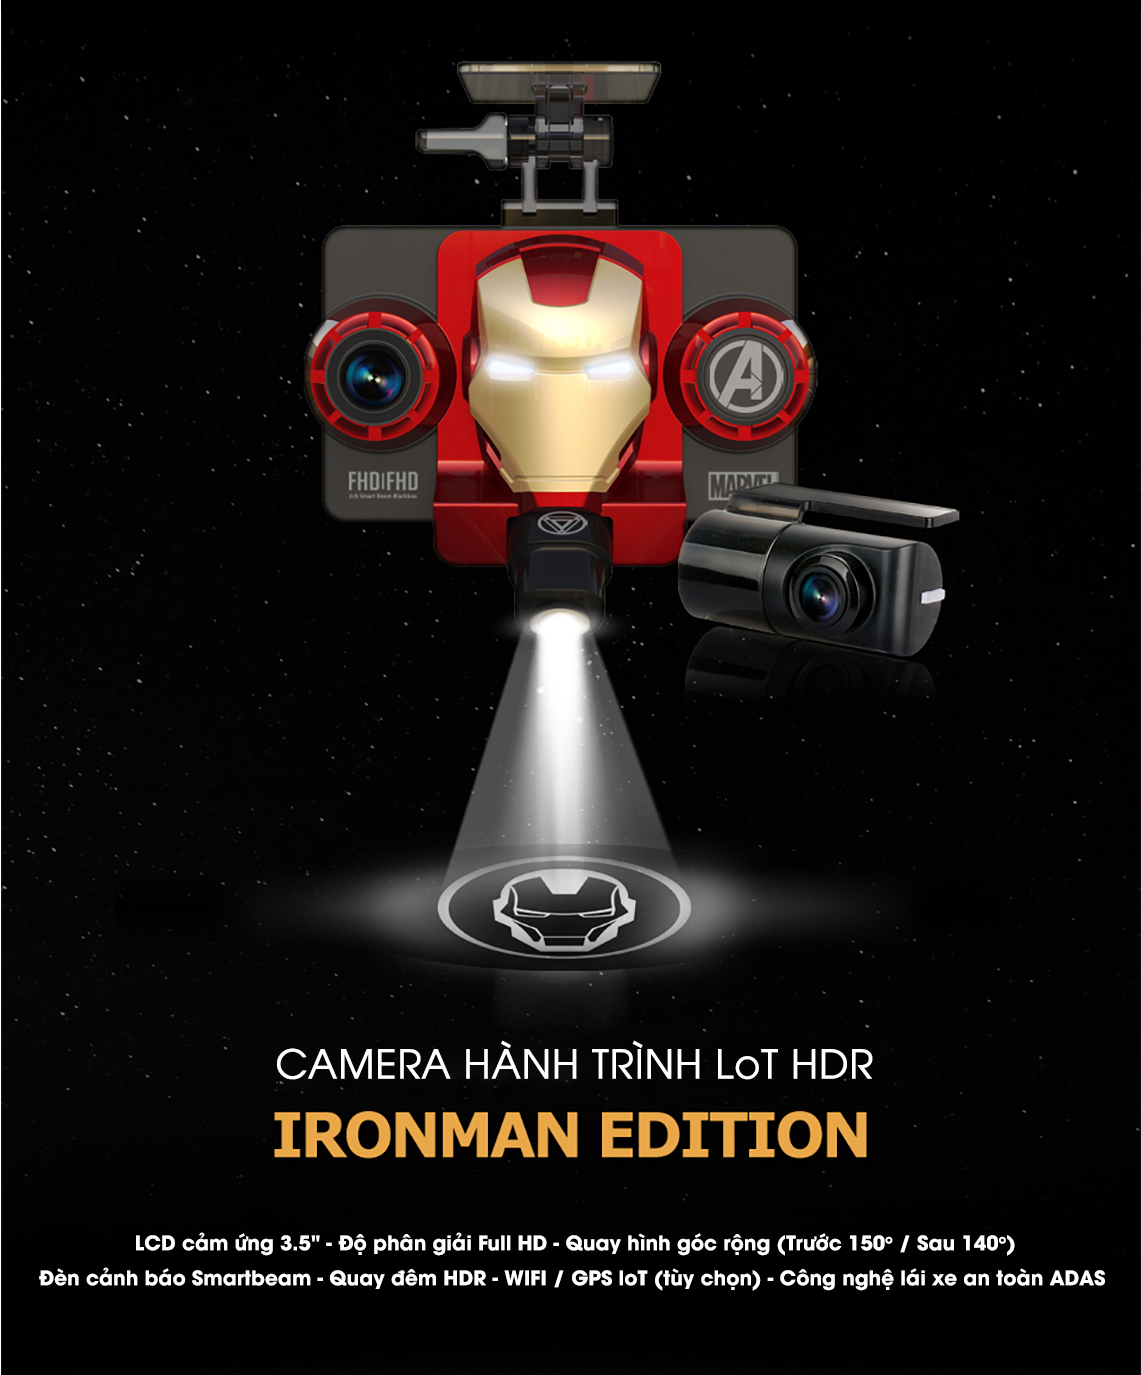 Camera hành trình GNET Iron man cực lạ